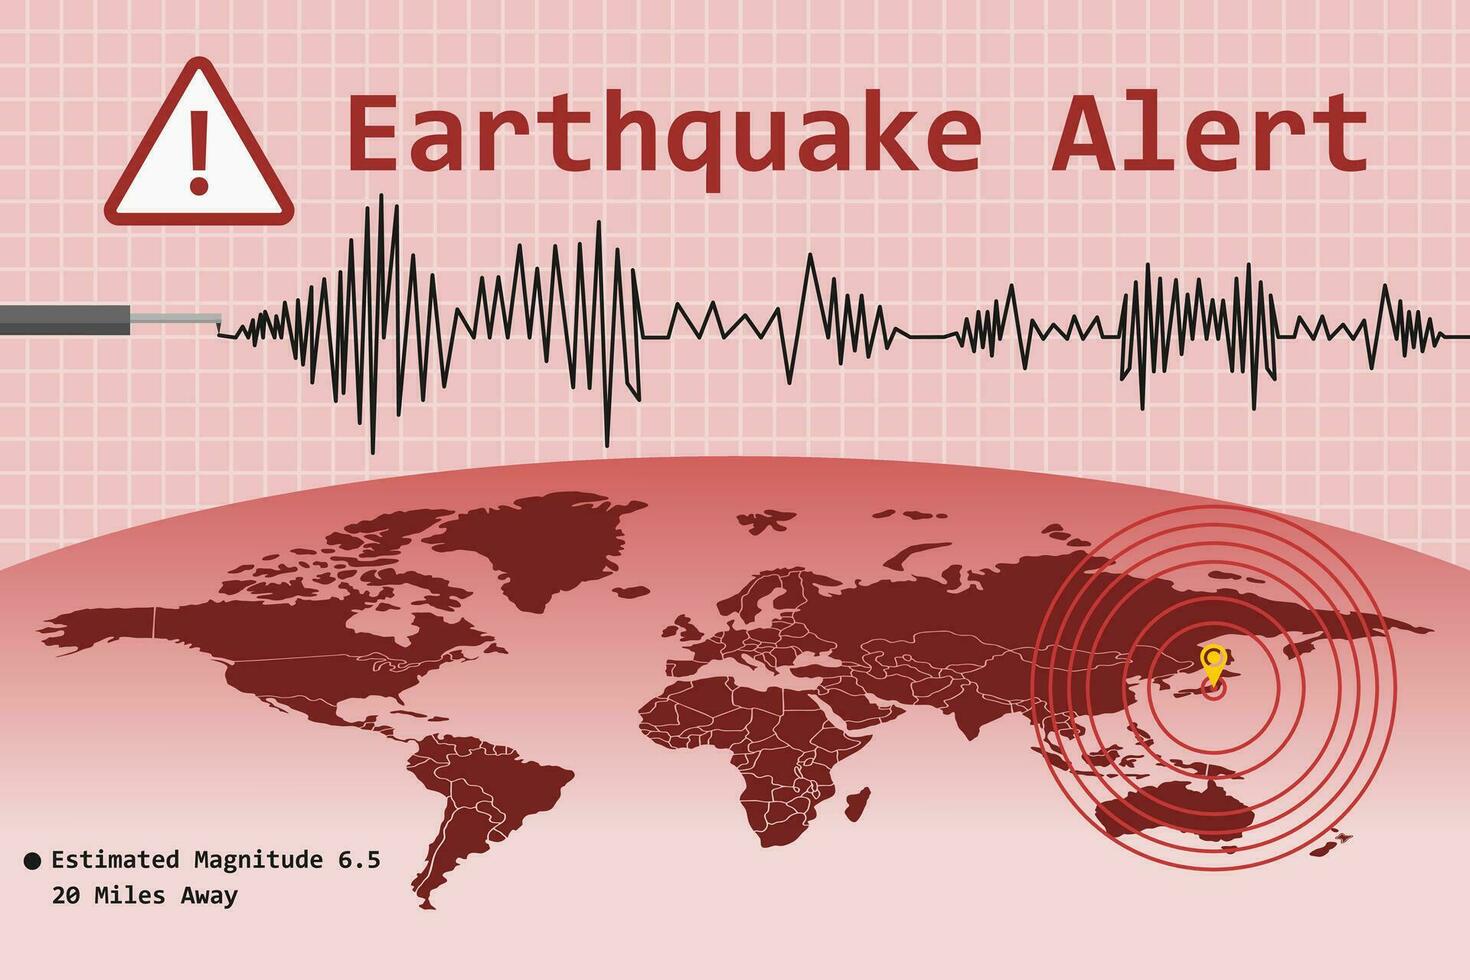 jordbävning varna begrepp med pulsering epicentrum plats mark och värld Karta. vektor illustration.